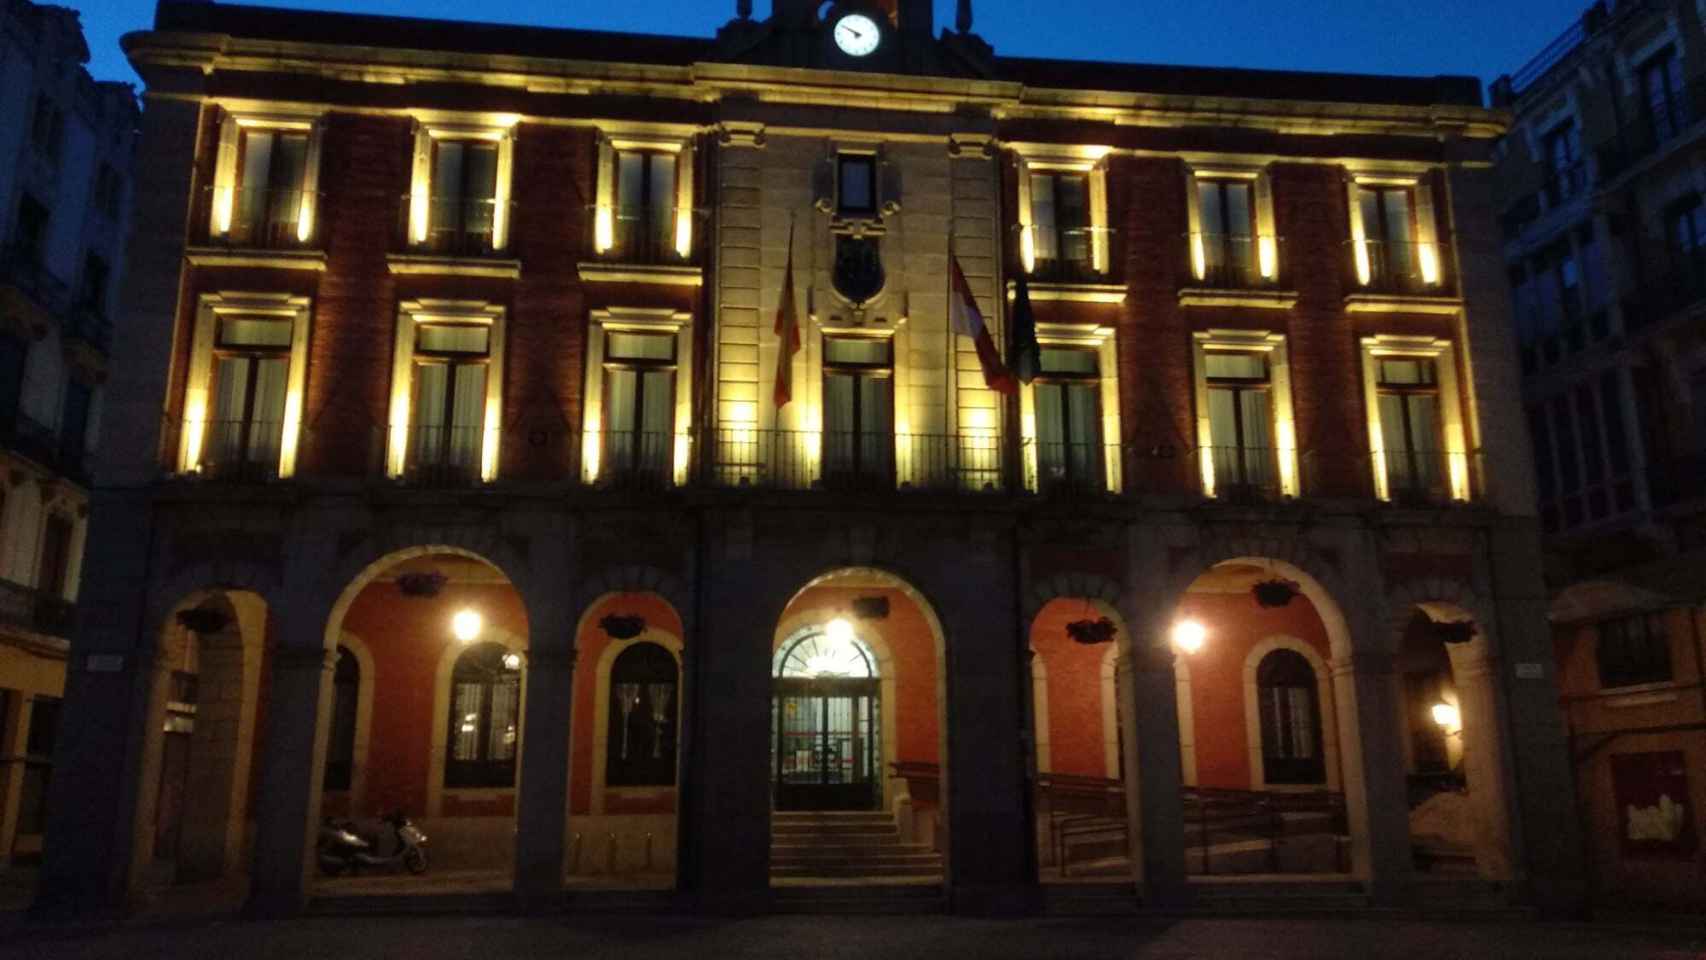 La fachada del Ayuntamiento de Zamora iluminada en color dorado